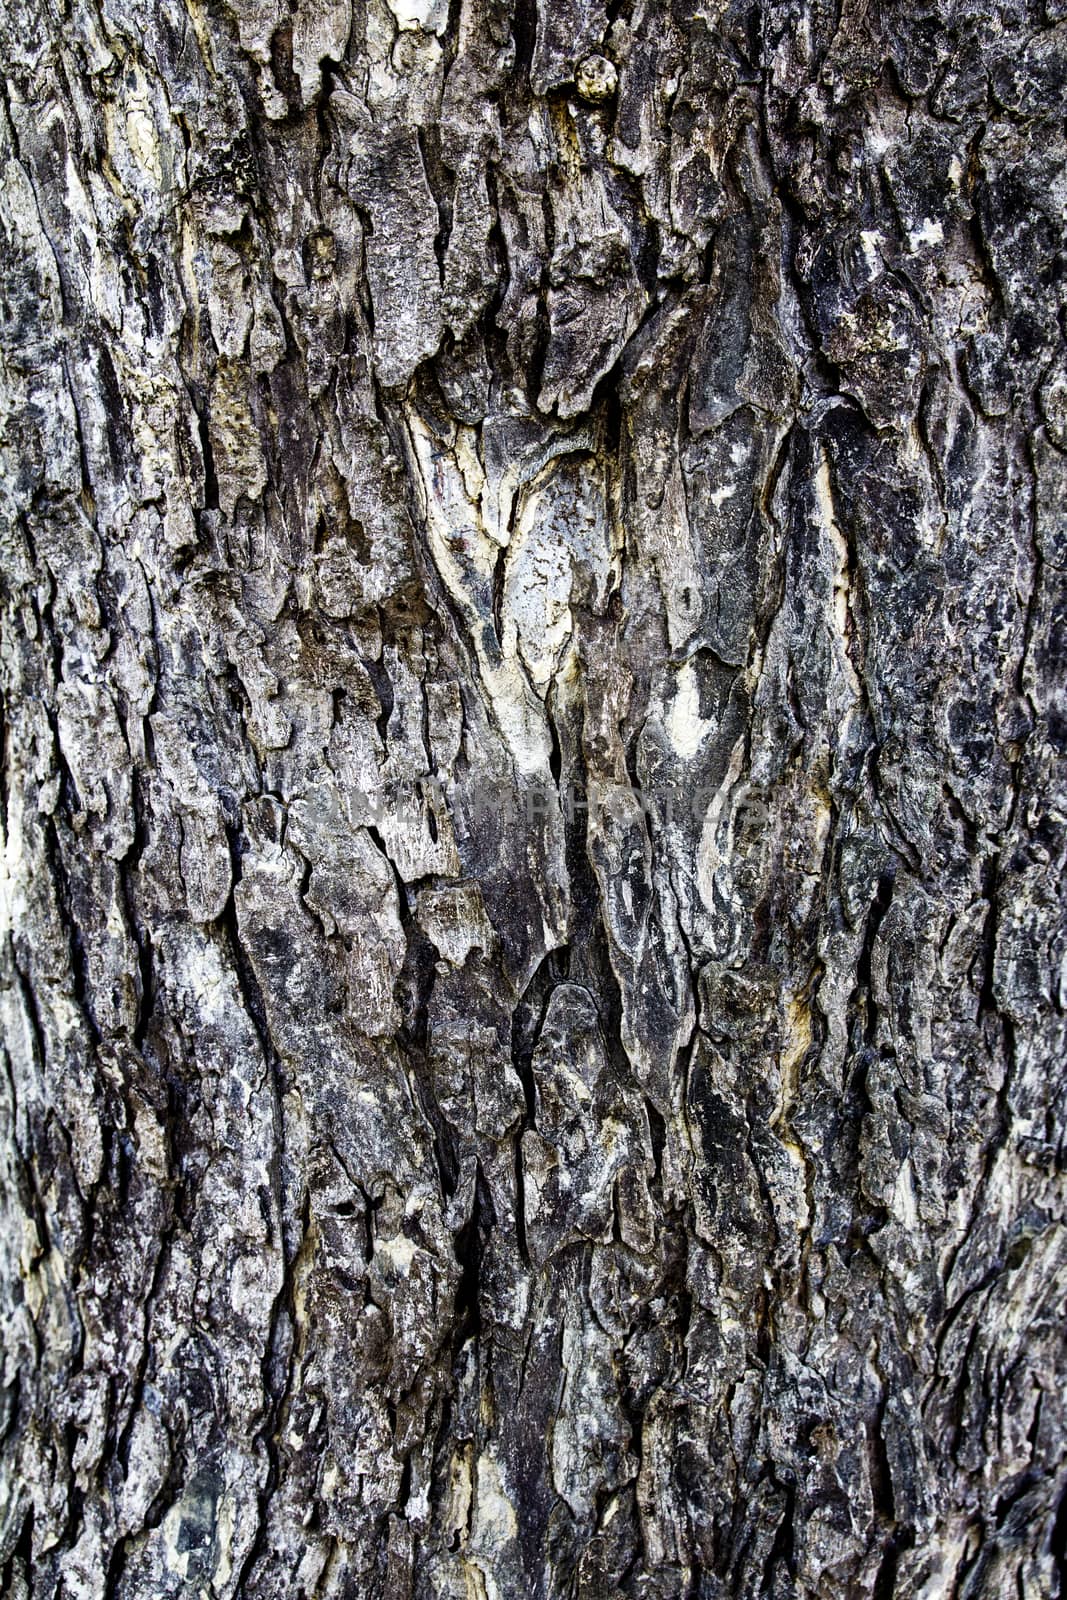 Tree bark texture by ibahoh